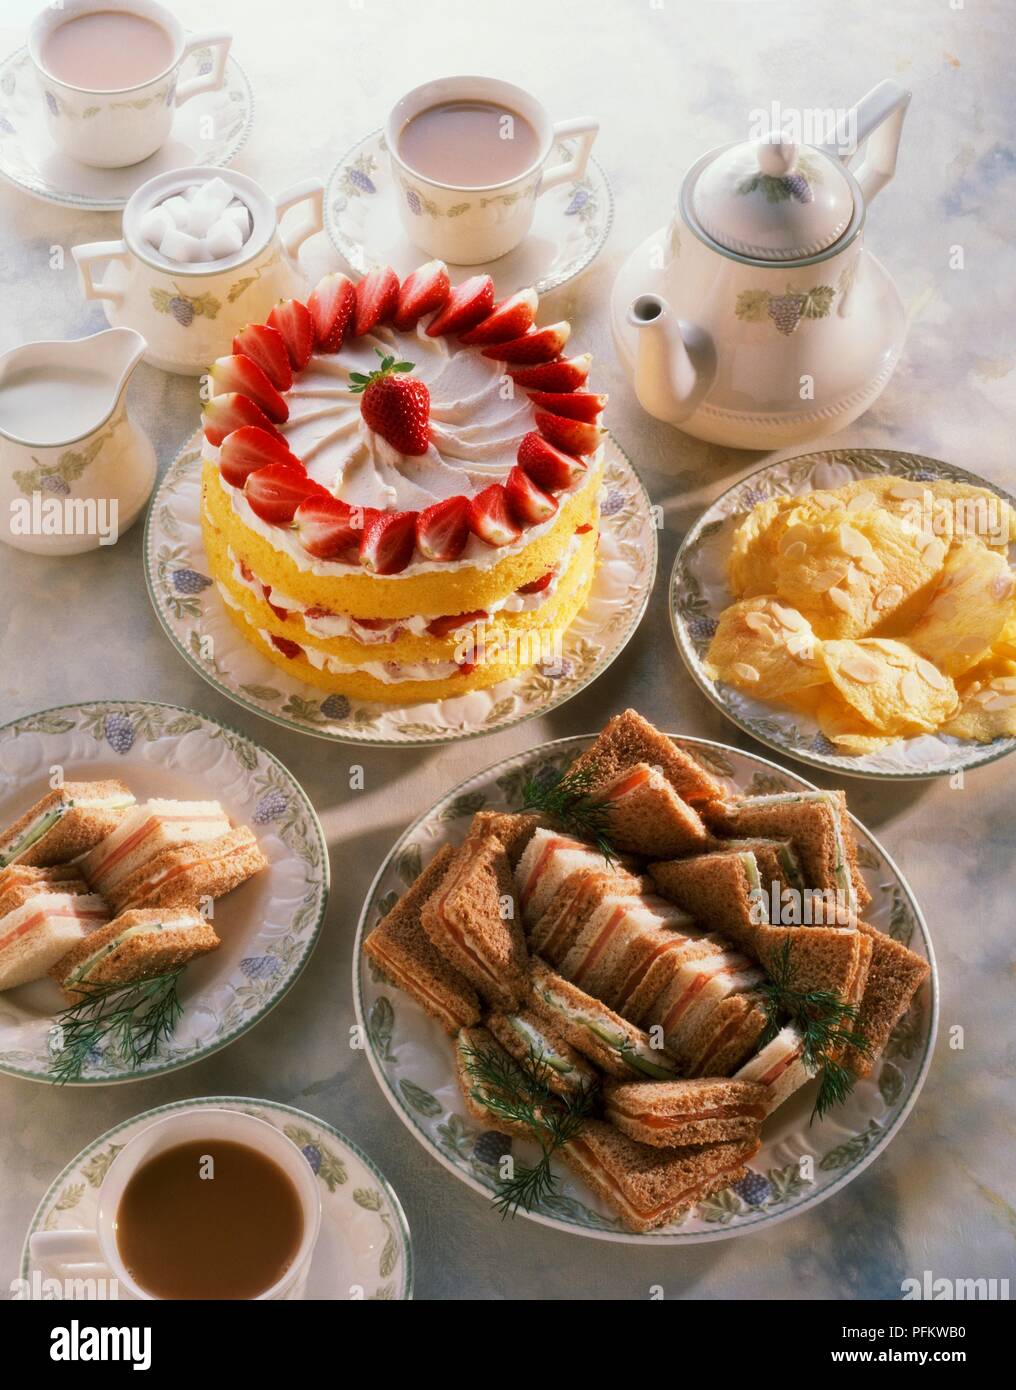 La tabella di cui alla fragola pan di spagna, club sandwich, biscotti, teiera e tazze di tè Foto Stock